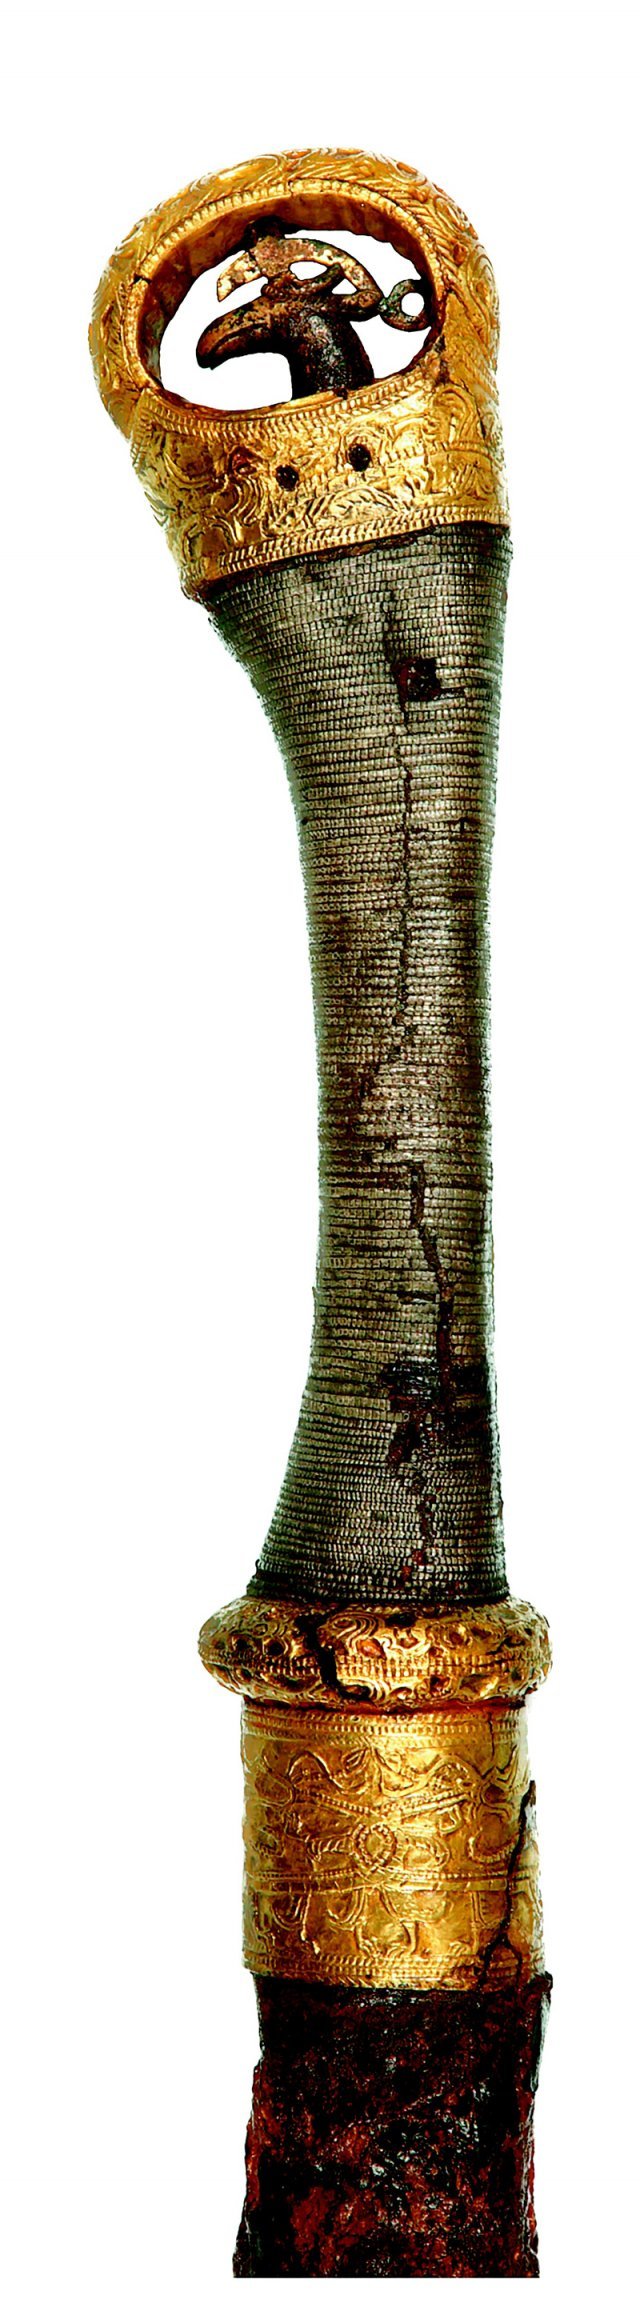 옥전 M3호분에서 출토된 용과 봉황무늬가 장식된 큰칼의 손잡이 부분. 실제 전장에서 쓰이는 무기라기보다는 최고 권력자의 권위를 상징하는 물품이었다. 맨 위쪽 둥근 고리 지름 6.3cm, 5세기 후반. 국립진주박물관 제공